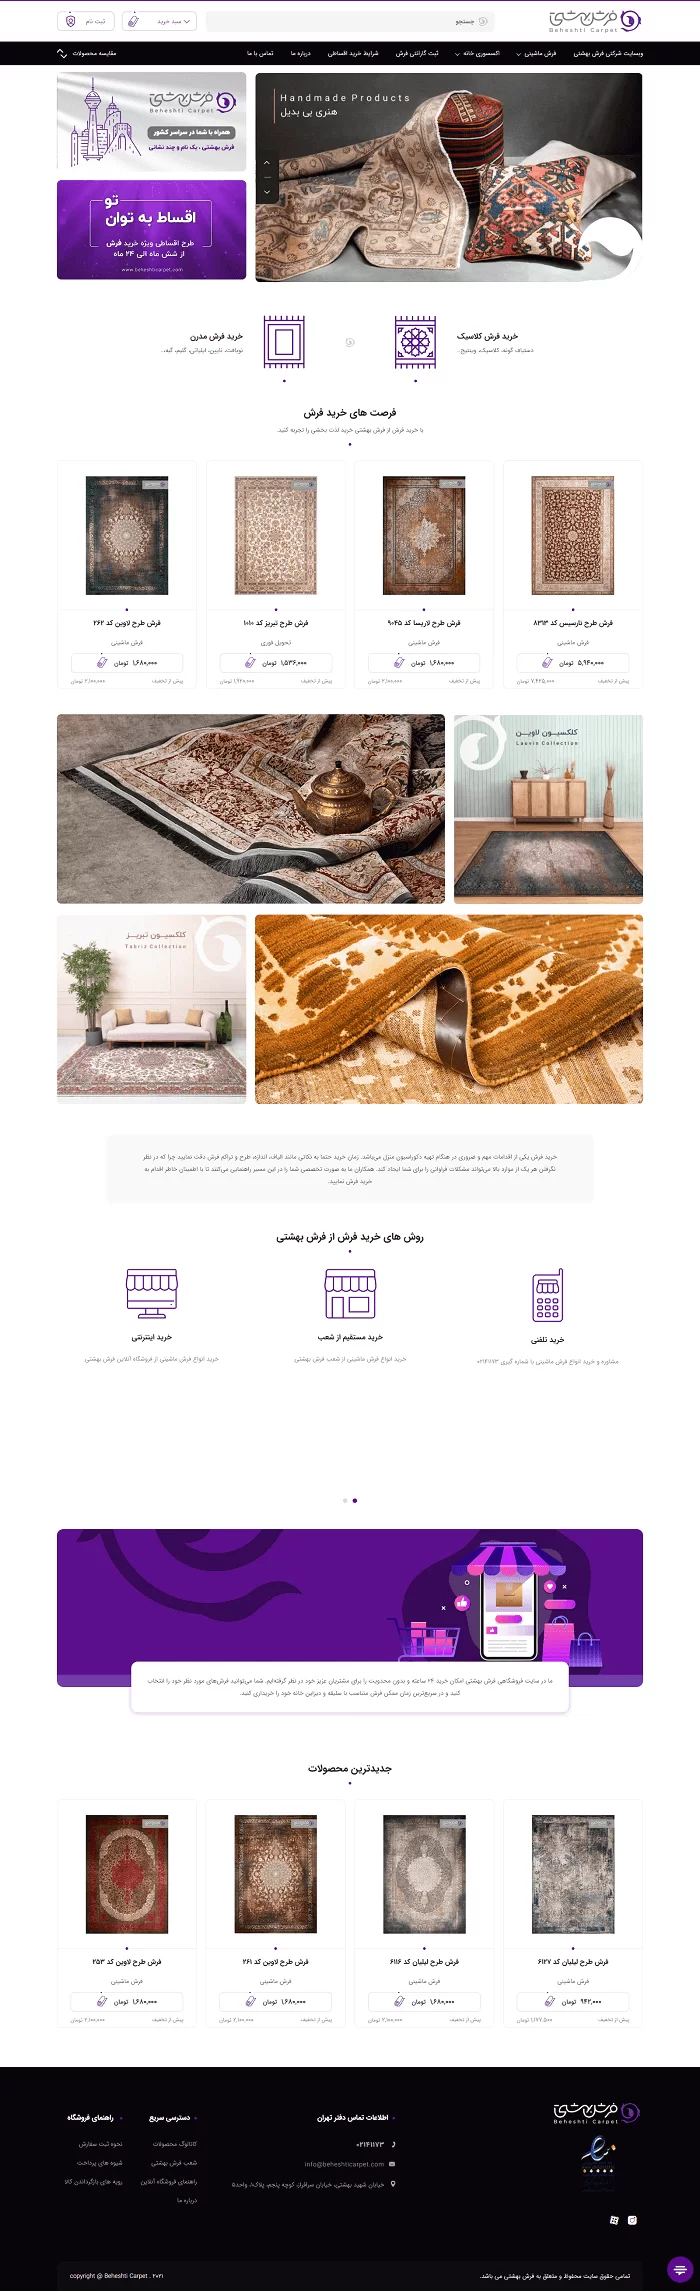 طراحی سایت فرش بهشتی